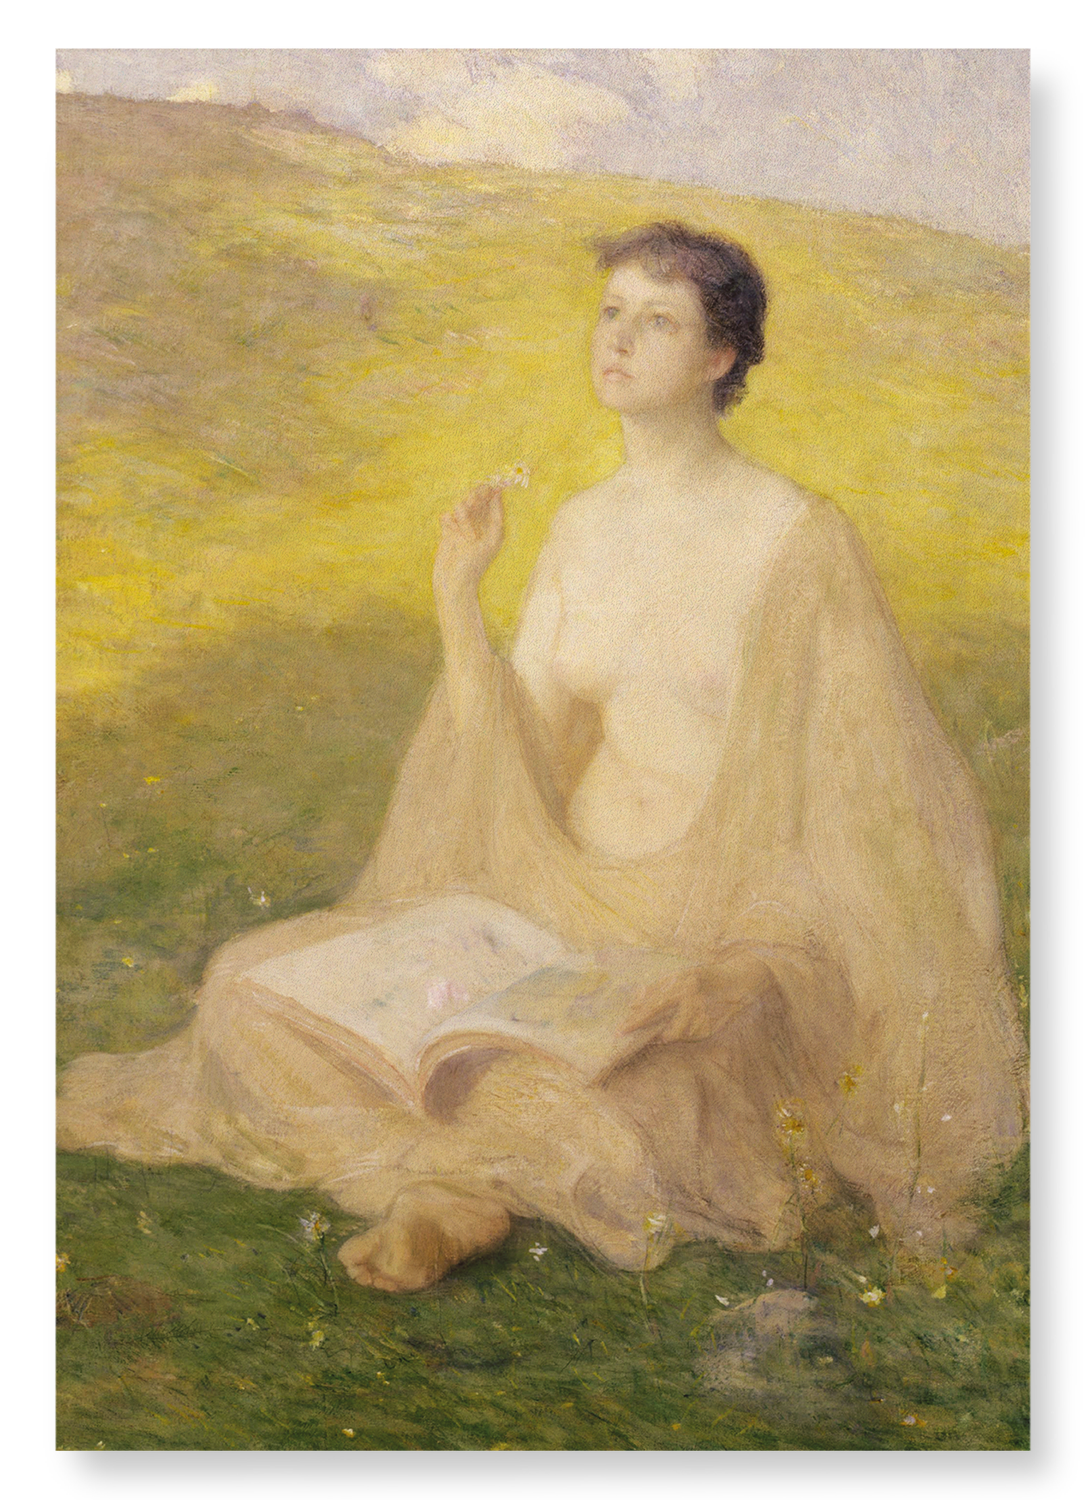 OPEN BOOK (1891)